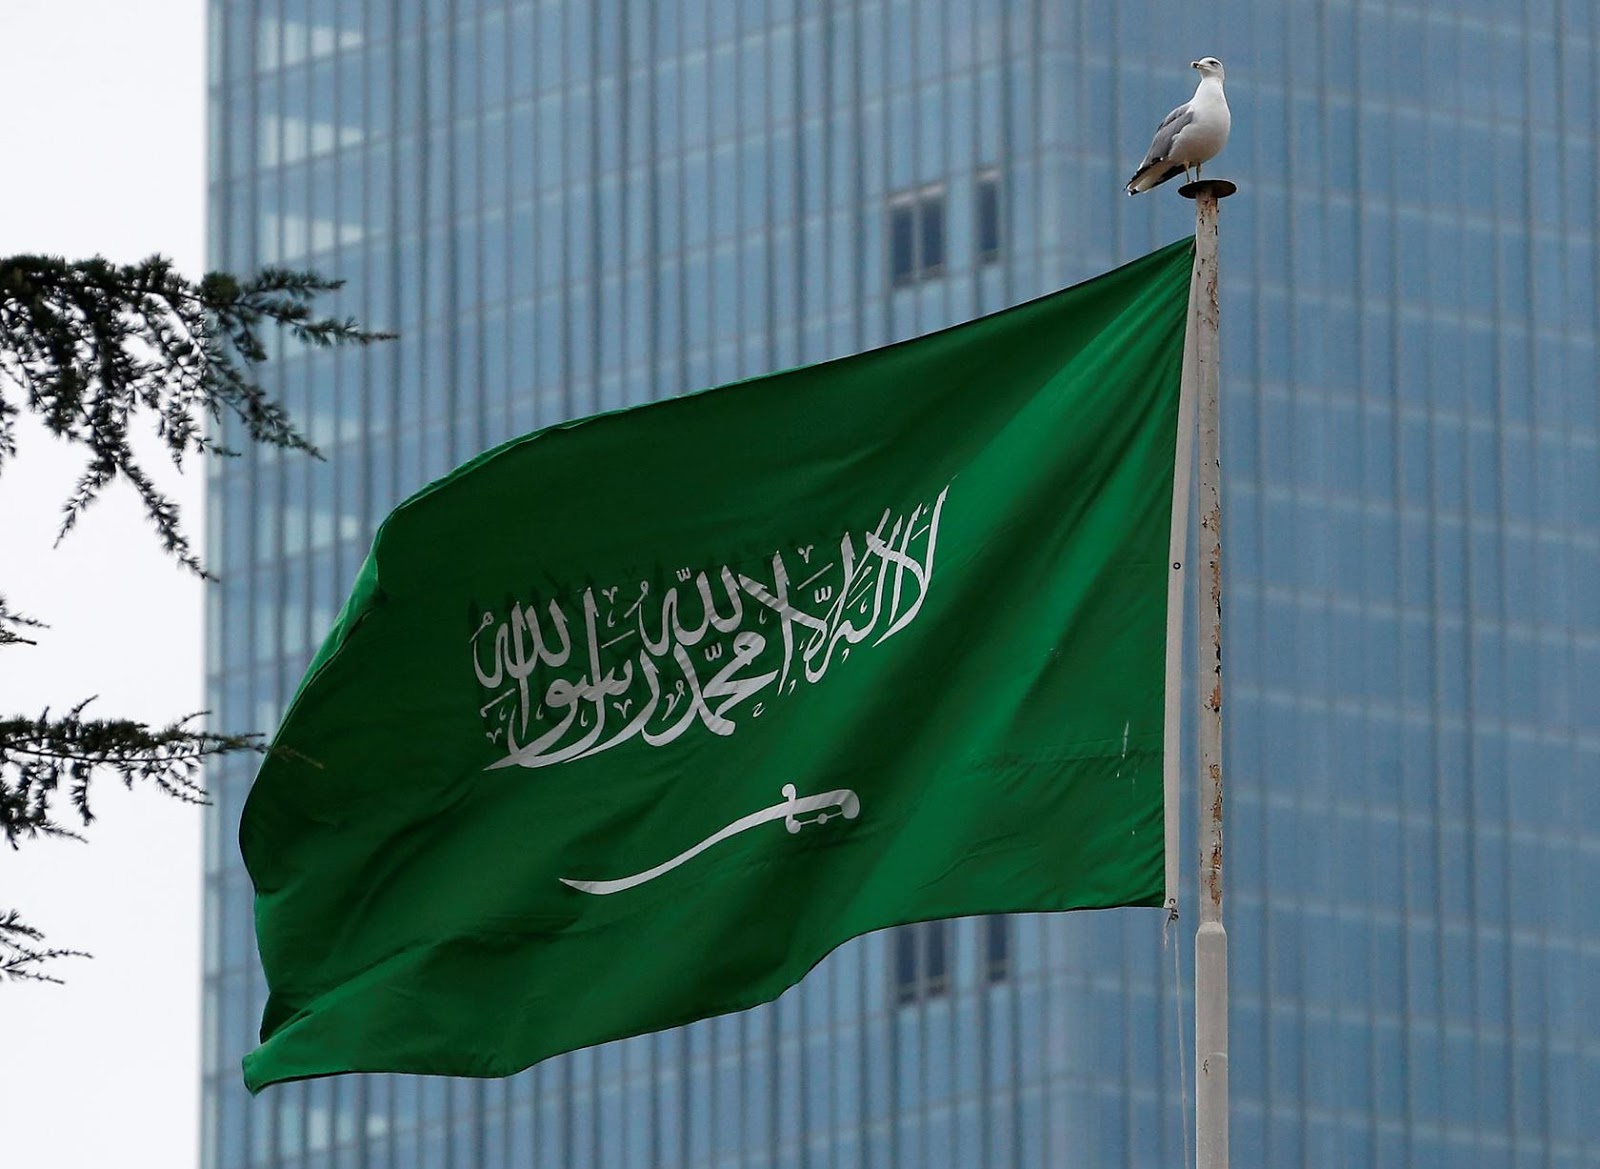 علم السعودية القديم